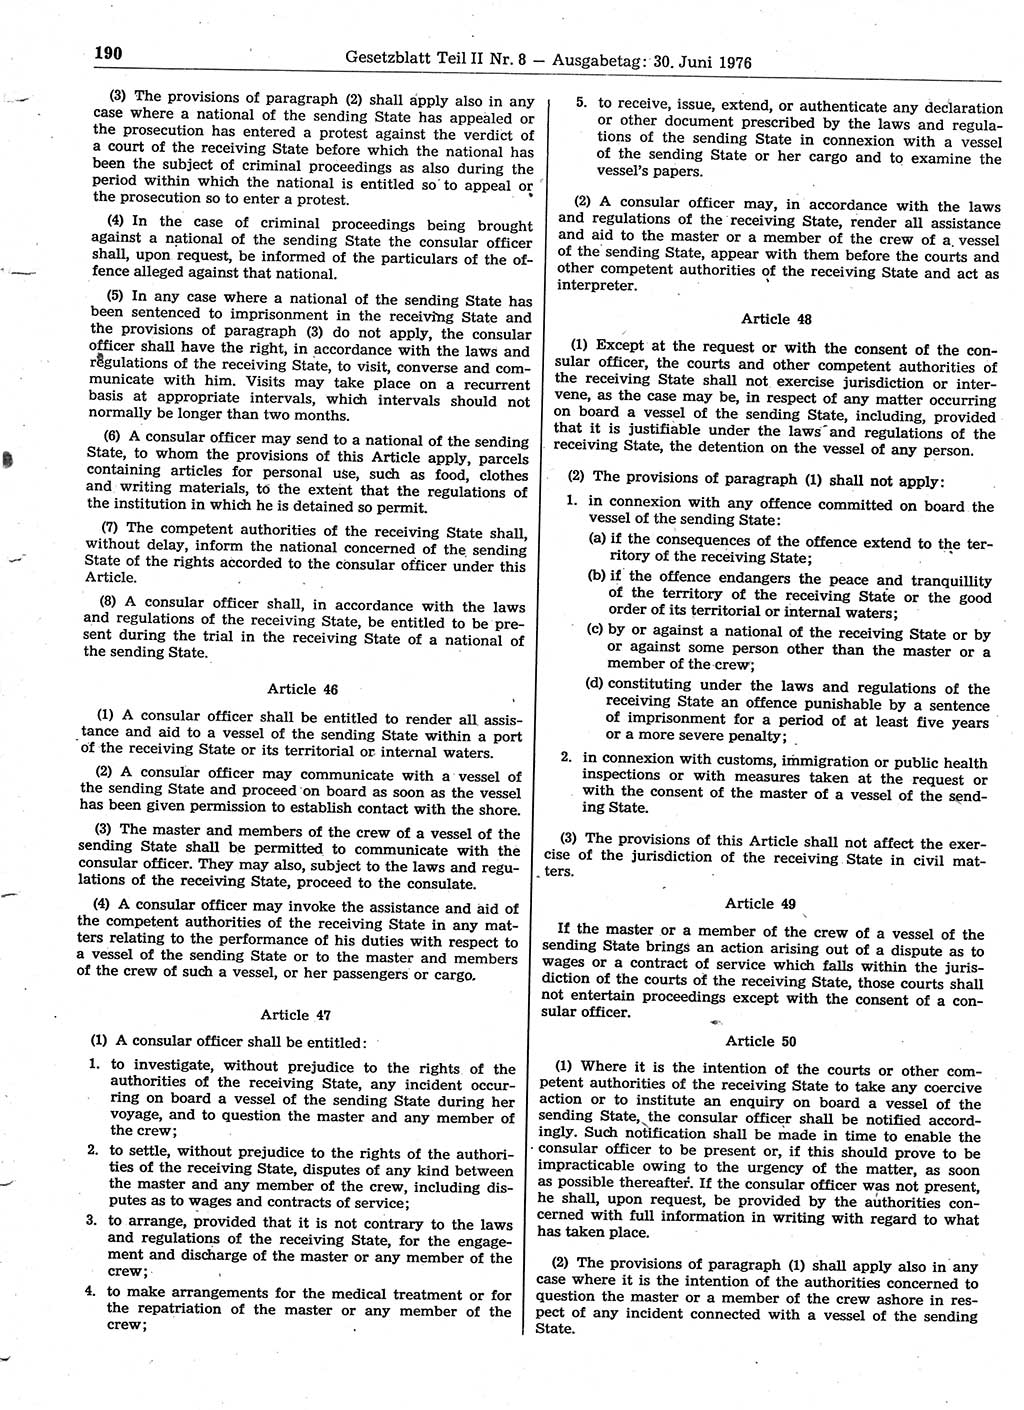 Gesetzblatt (GBl.) der Deutschen Demokratischen Republik (DDR) Teil ⅠⅠ 1976, Seite 190 (GBl. DDR ⅠⅠ 1976, S. 190)